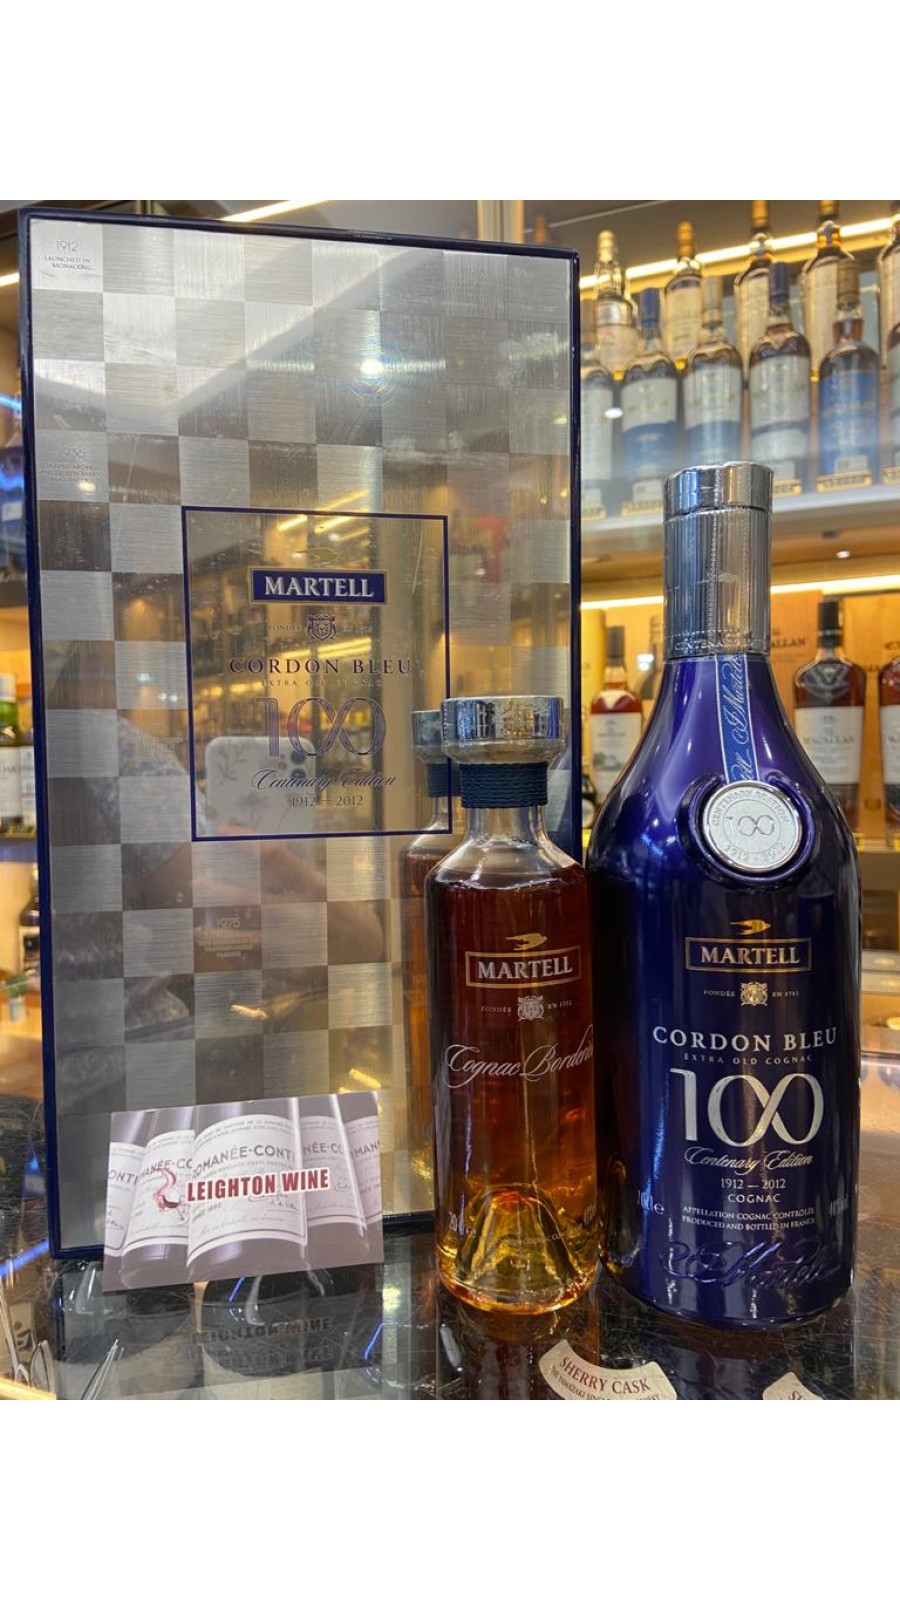 Martell Cordon Bleu 100 Centenary Edition Extra Old Cognac 